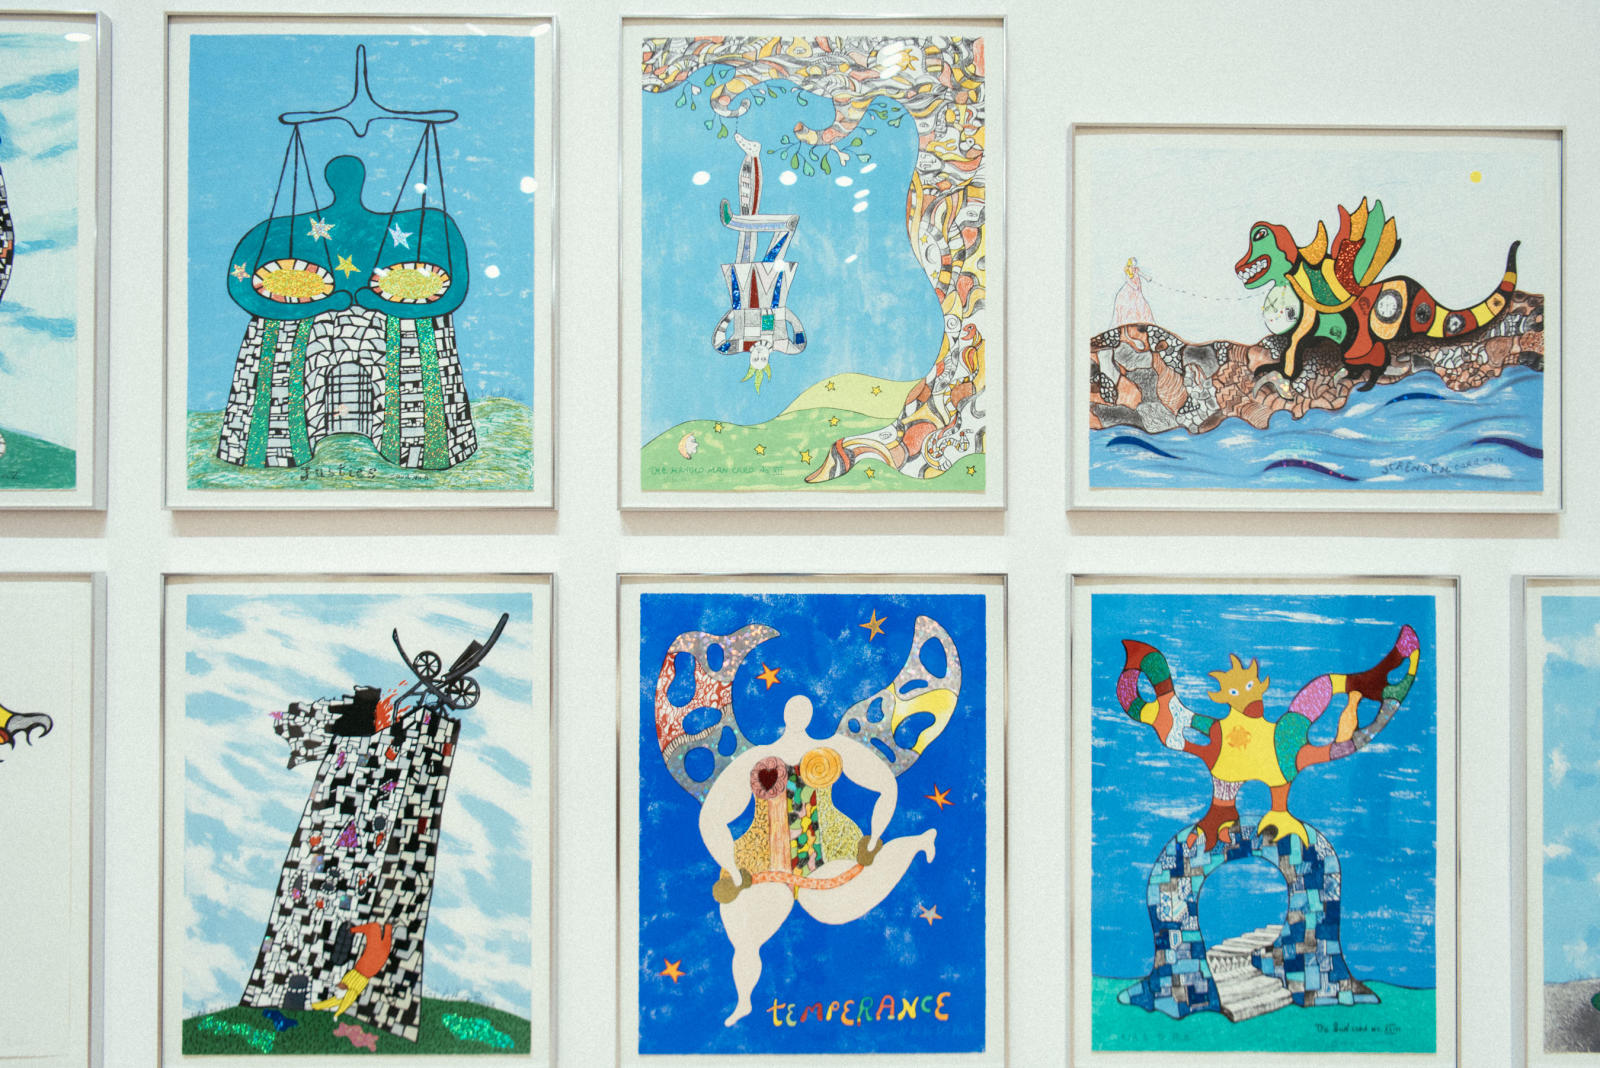 The art works of Niki de Saint Phalle2